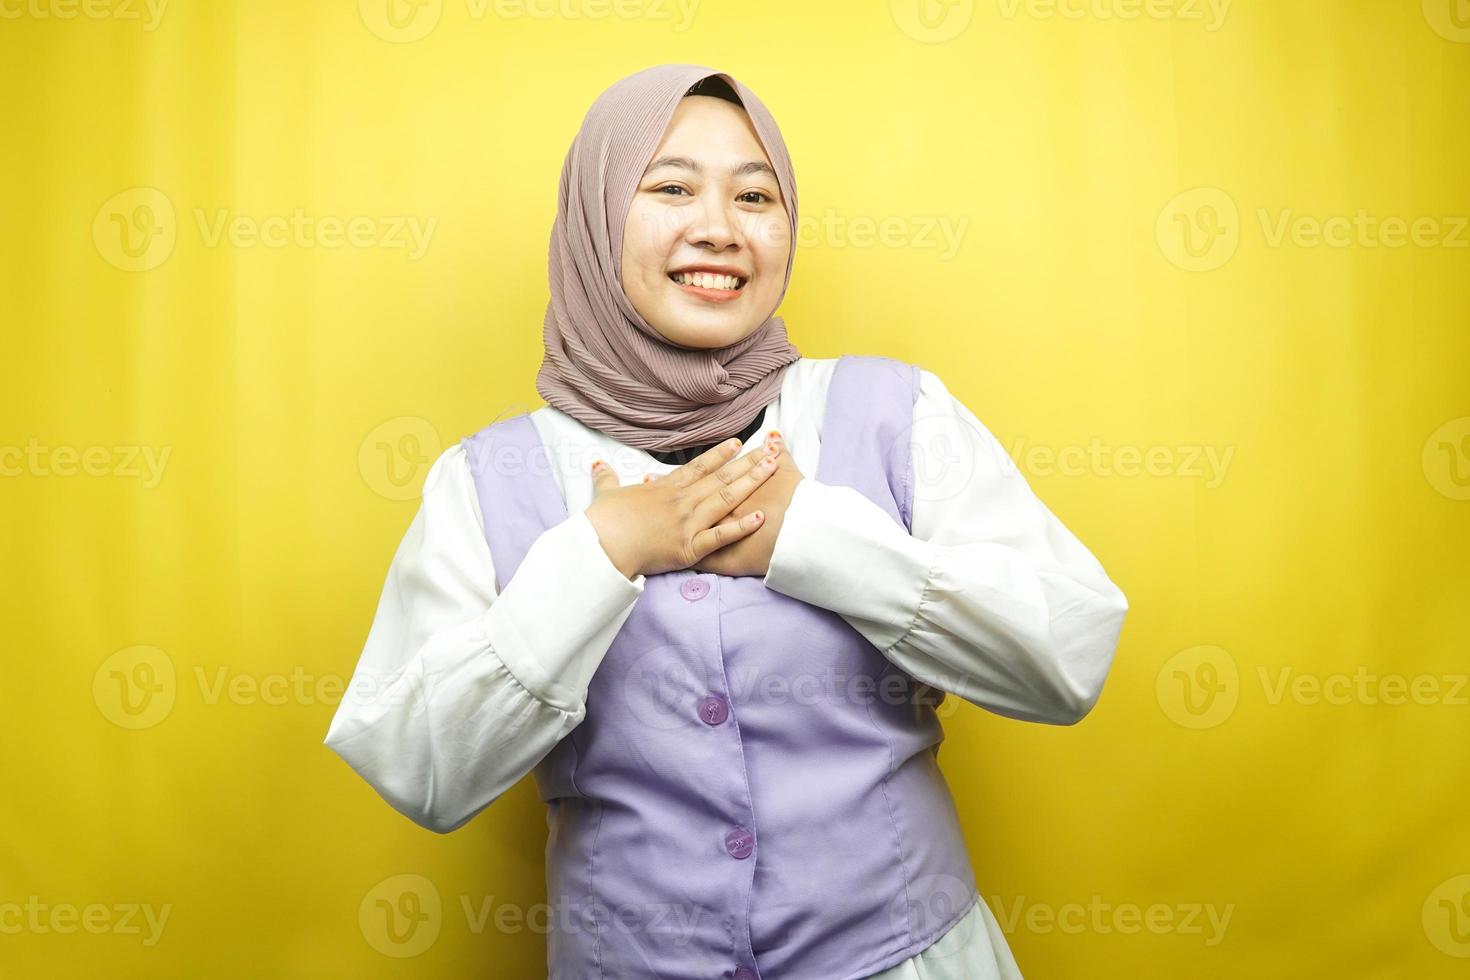 belle jeune femme musulmane asiatique souriante surprise et joyeuse, les mains tenant la poitrine, excitée, ne s'attendant pas, regardant la caméra isolée sur fond jaune photo